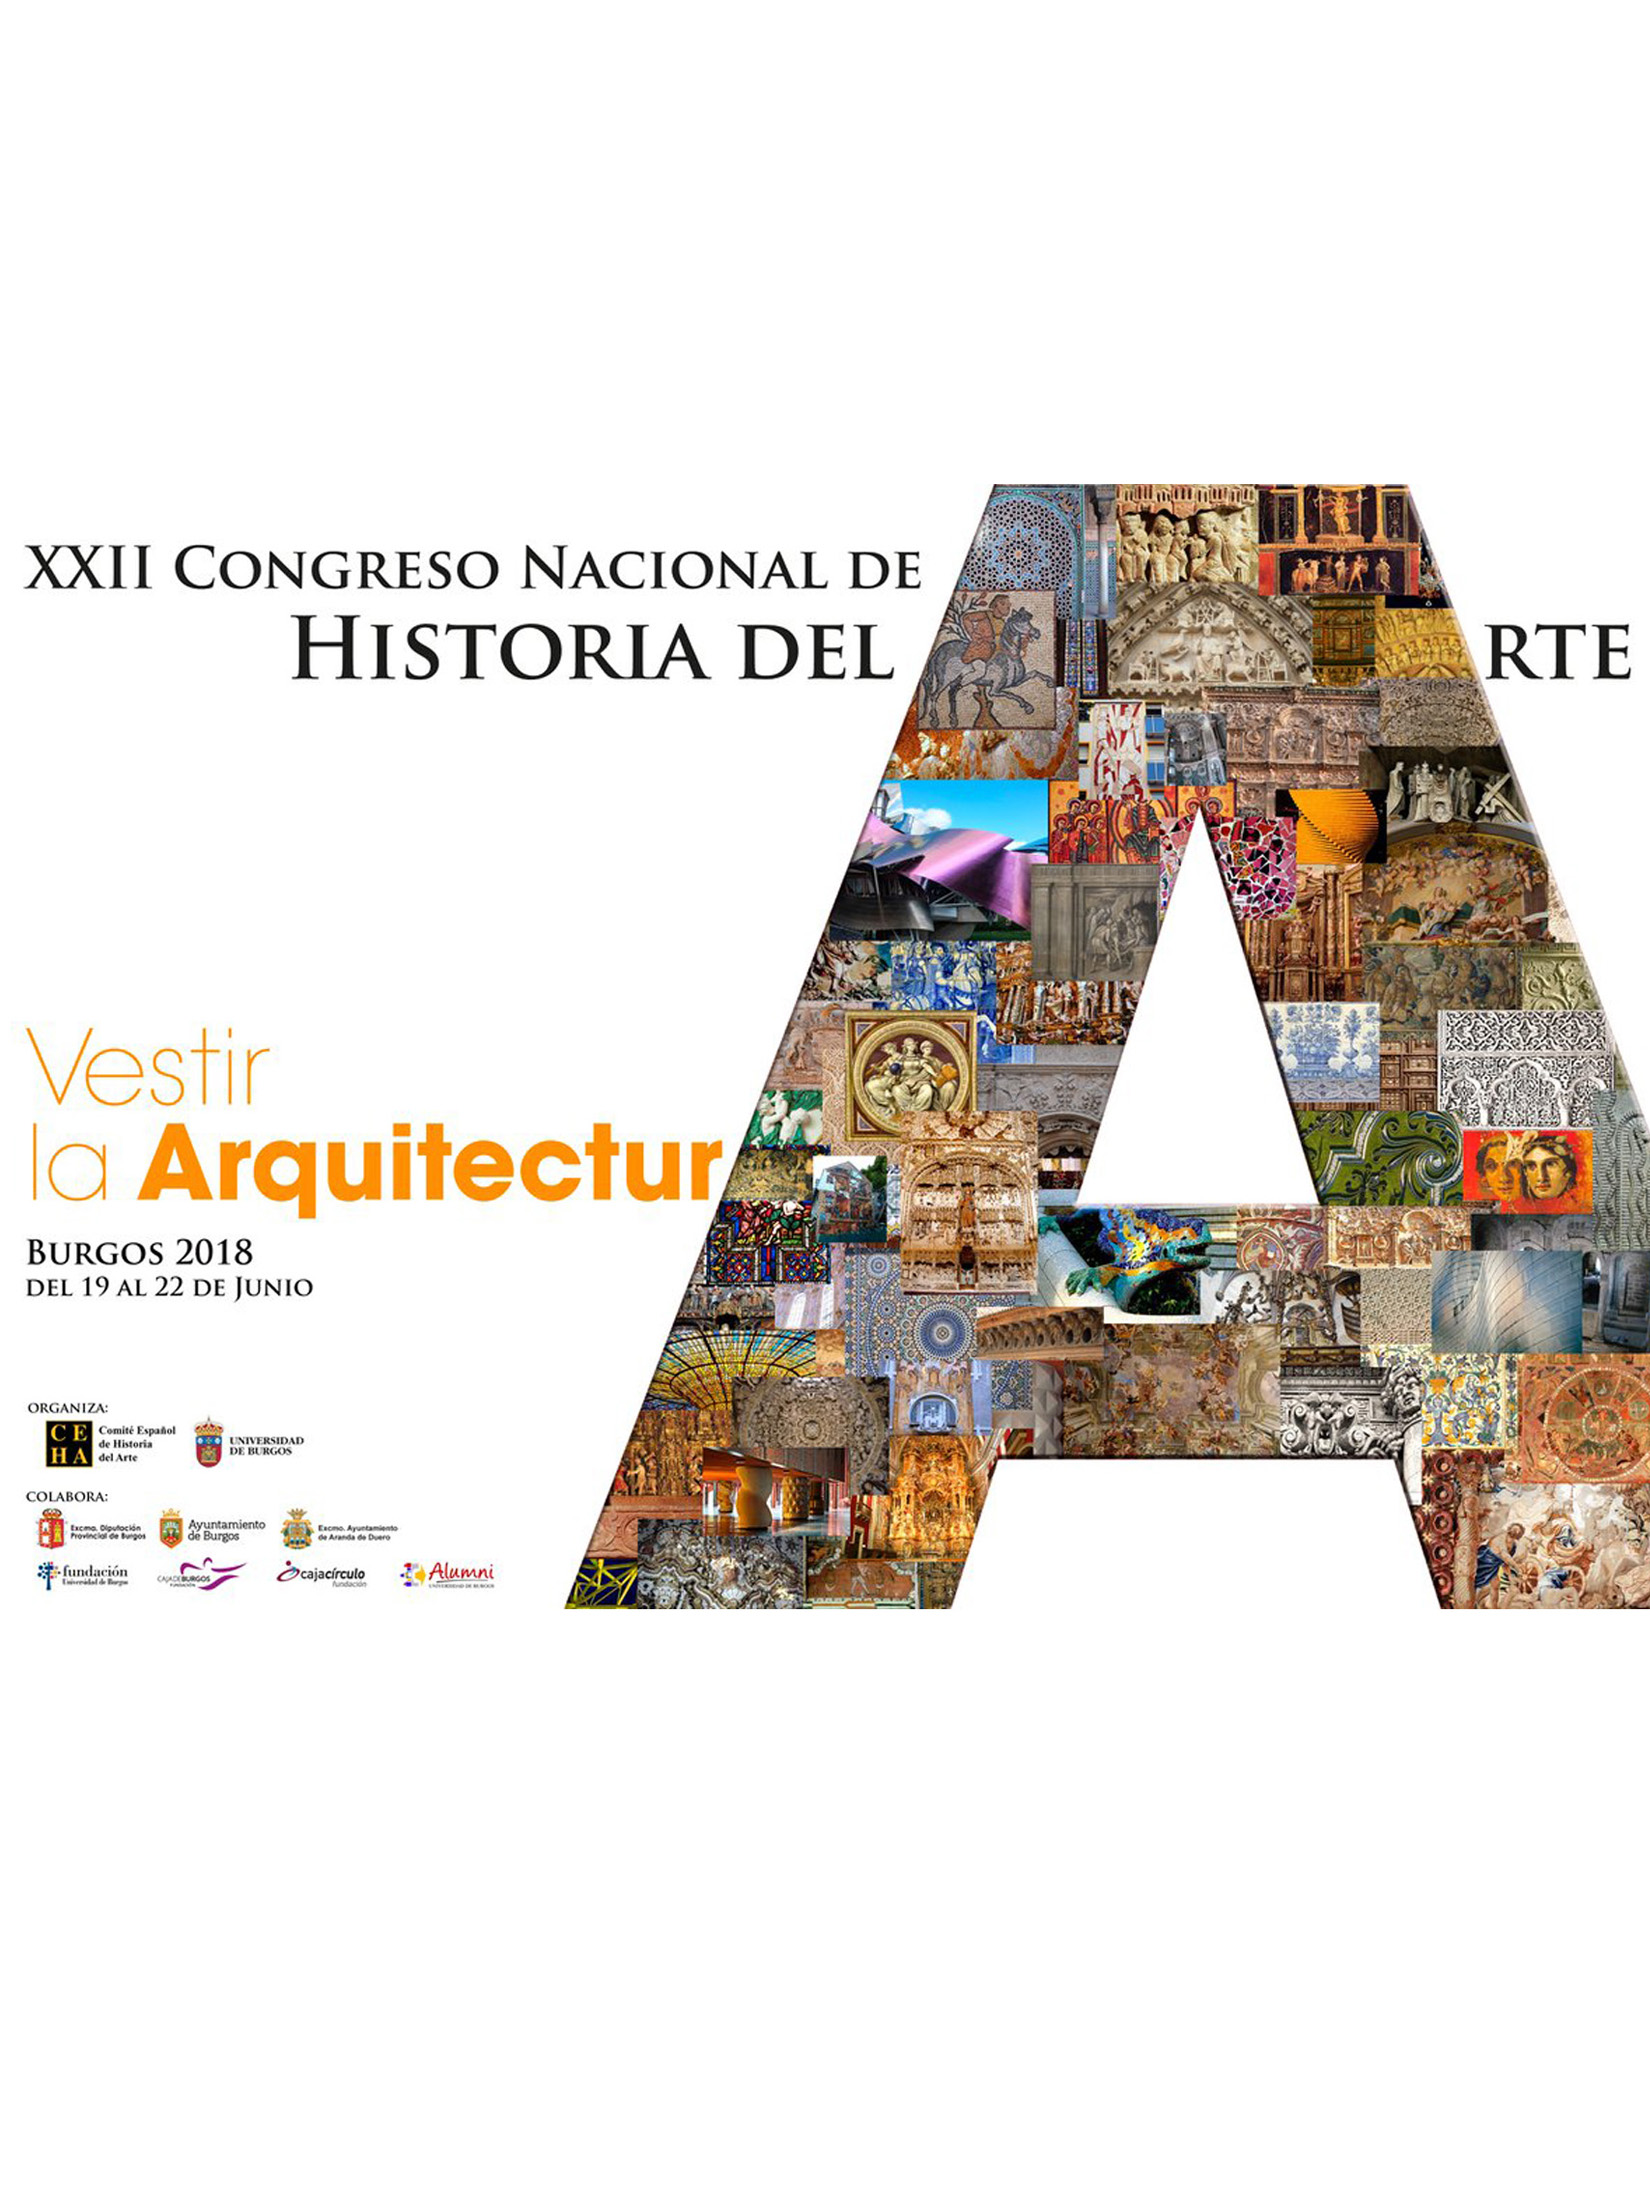 XXII Congreso Nacional de Historia del Arte: Vestir la arquitectura